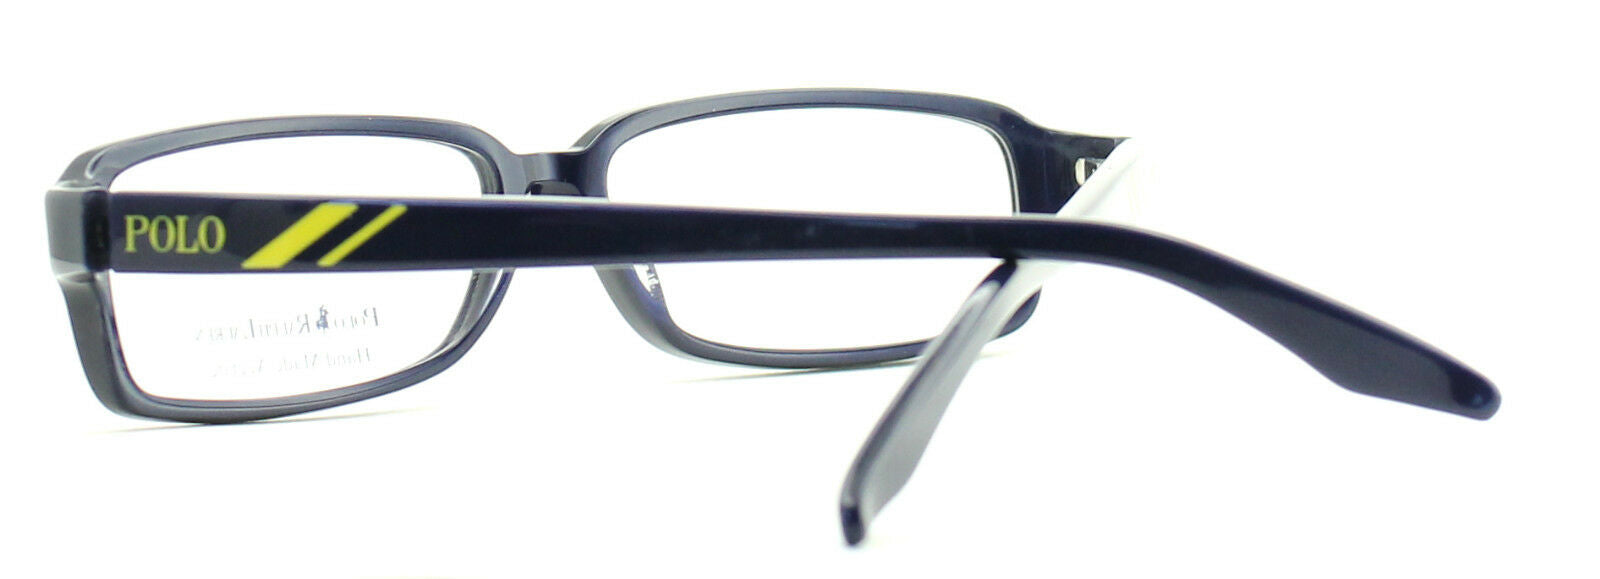 RALPH LAUREN POLO 1883 X2V Eyewear FRAMES RX Optical Glasses Eyeglasses - NEW